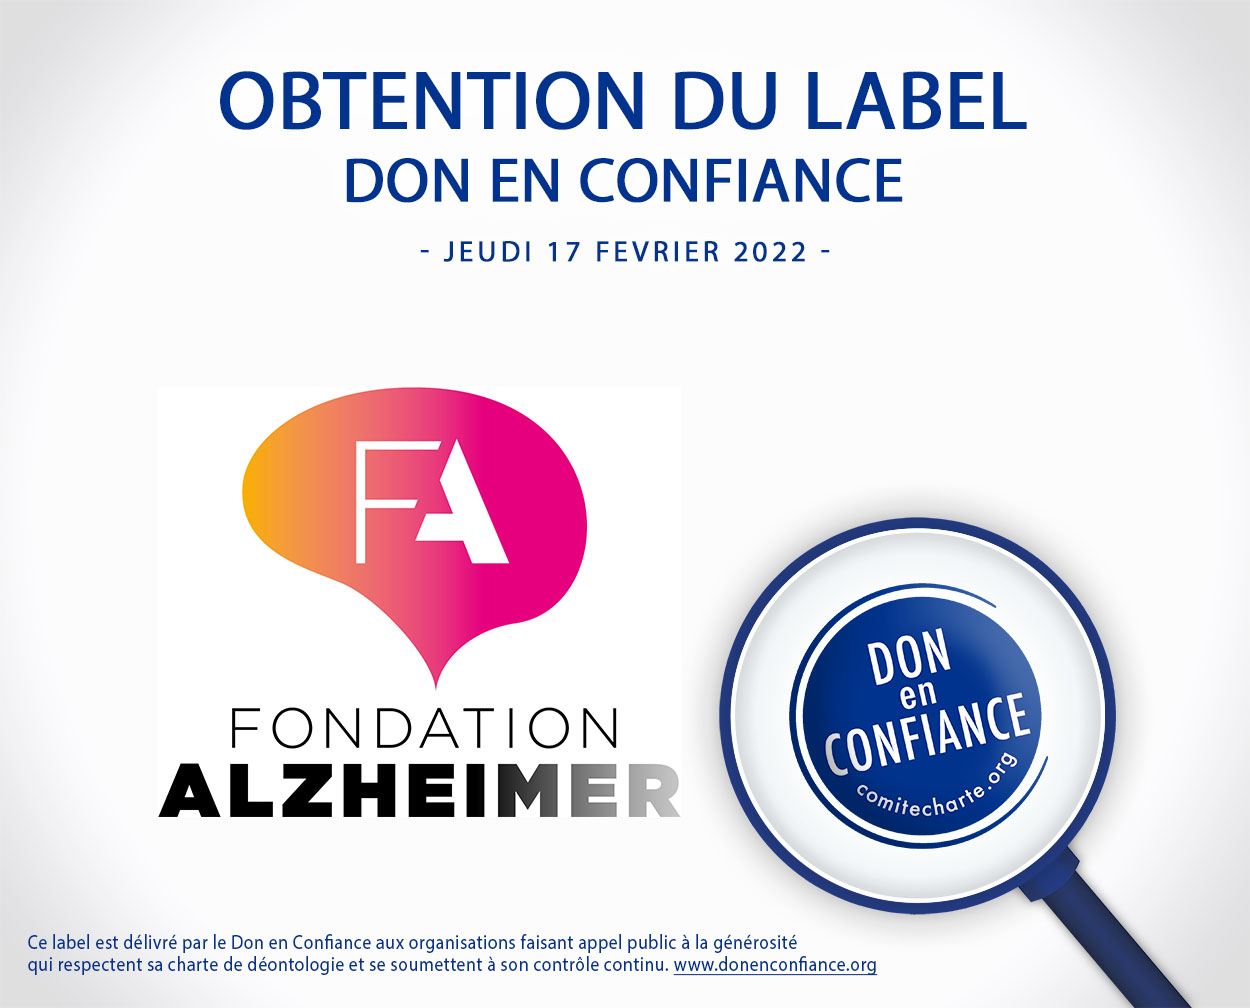 Fondation Alzheimer